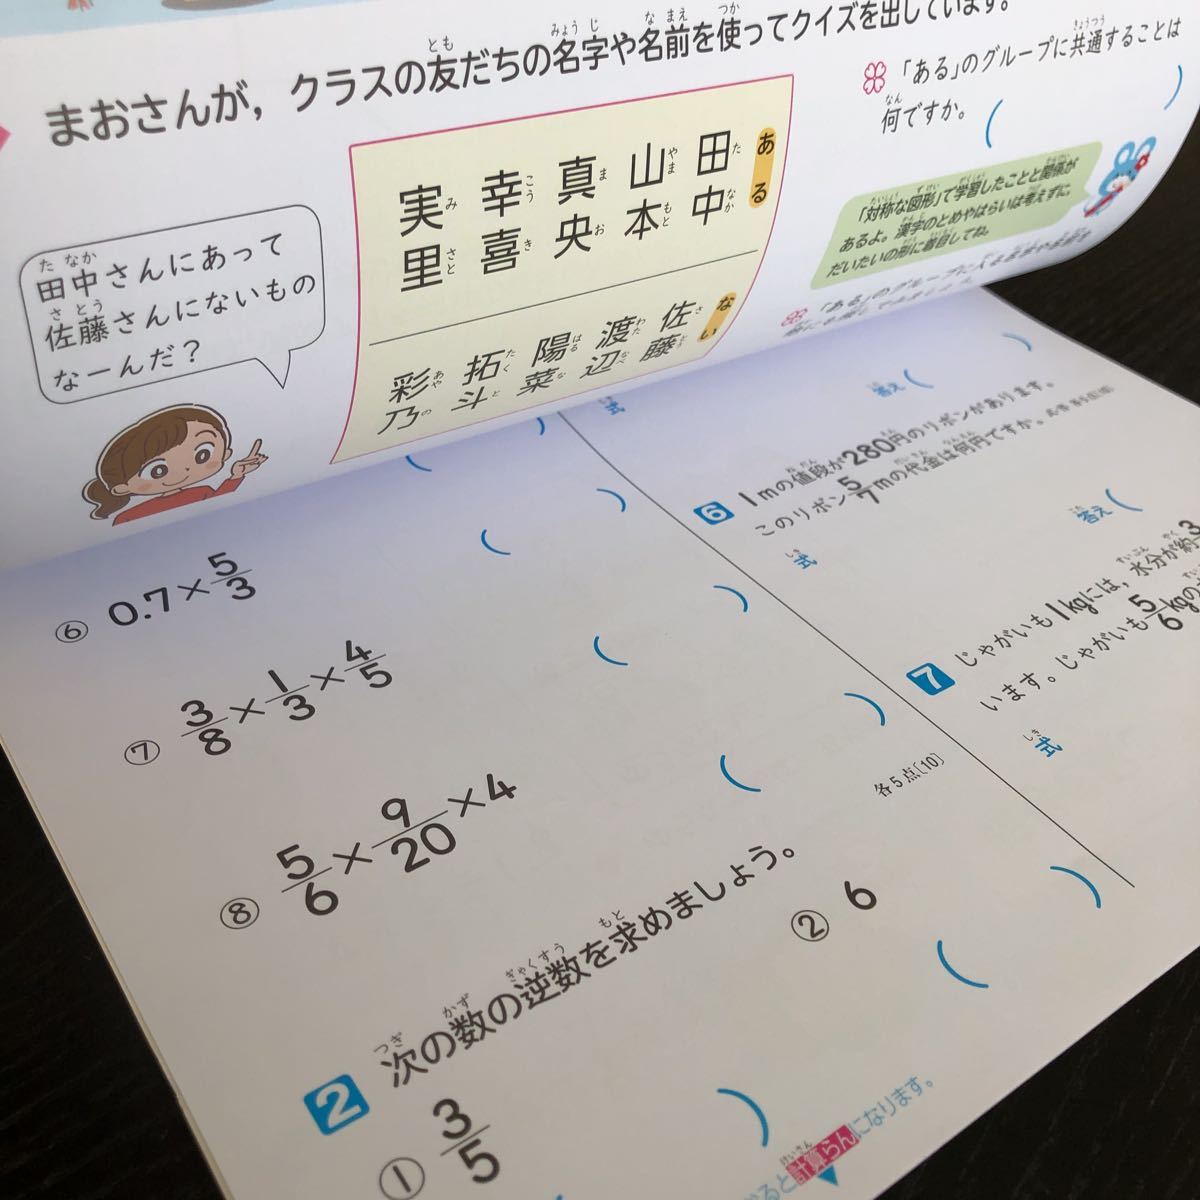 1447 基礎基本AL算数 6年 日本標準 小学 ドリル 問題集 テスト用紙 教材 テキスト 解答 家庭学習 計算 漢字 過去問 ワーク 図形 _画像5